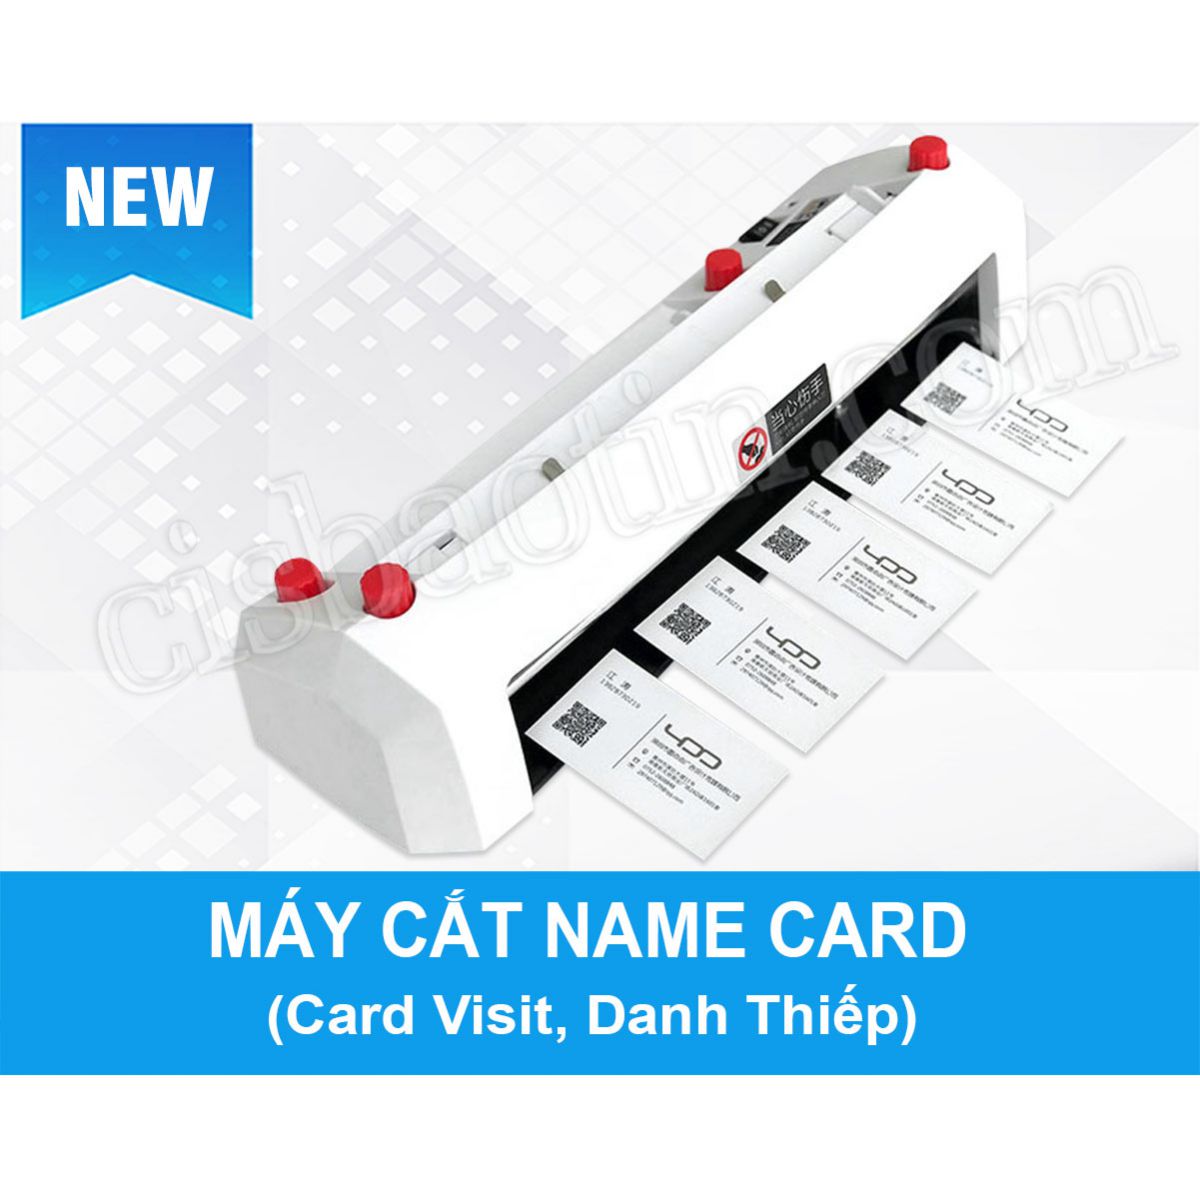 Máy cắt name card công nghệ mới